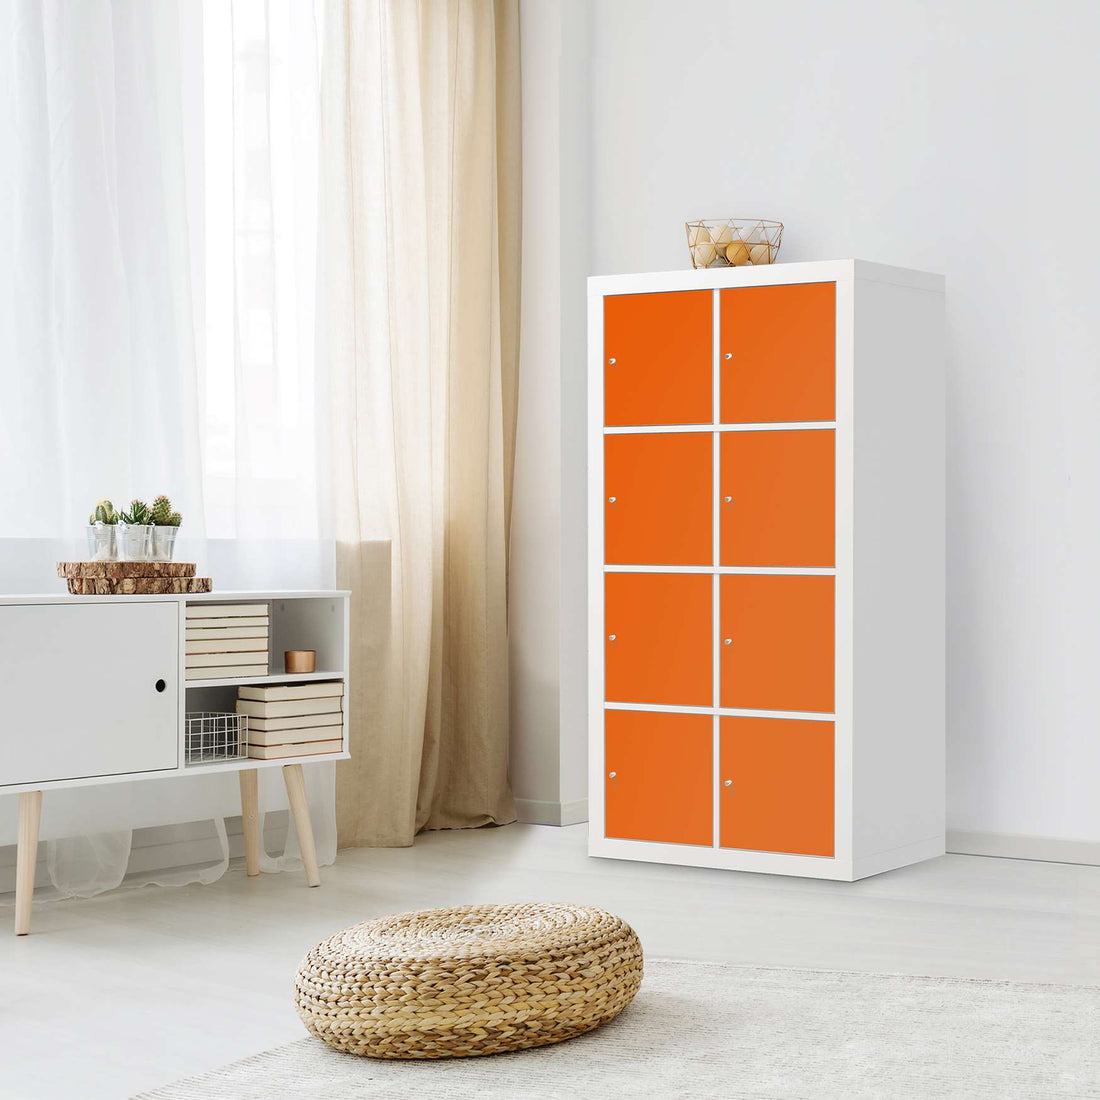 Folie für Möbel Orange Dark - IKEA Kallax Regal 8 Türen - Wohnzimmer